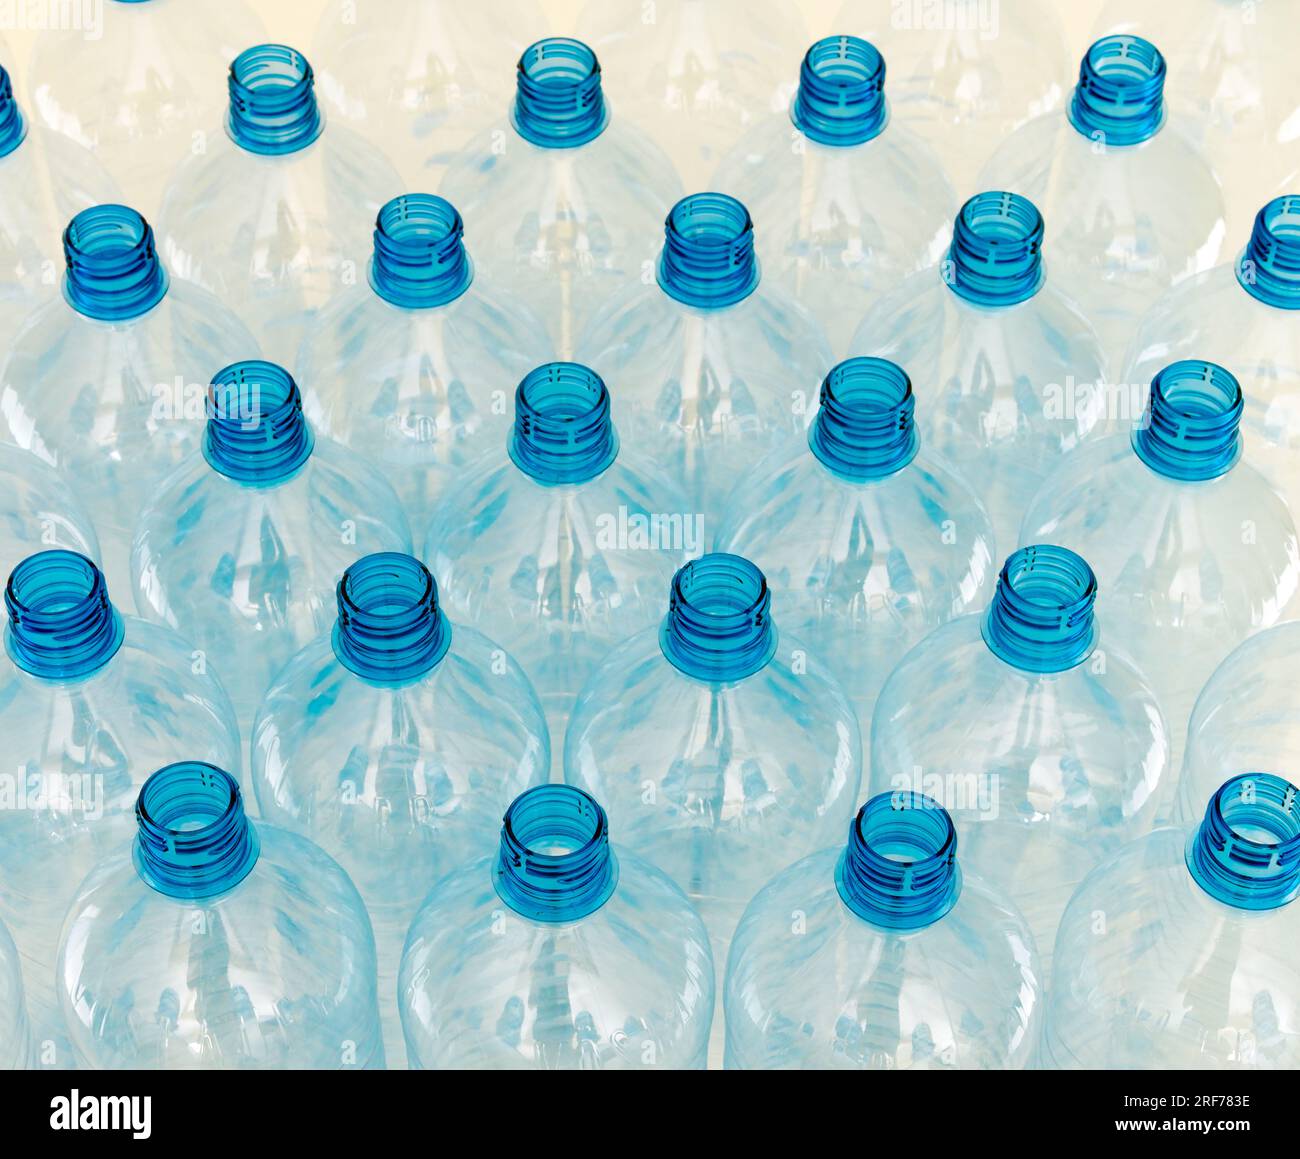 Leere Wasserflaschen, blauer Verschluss Stock Photo